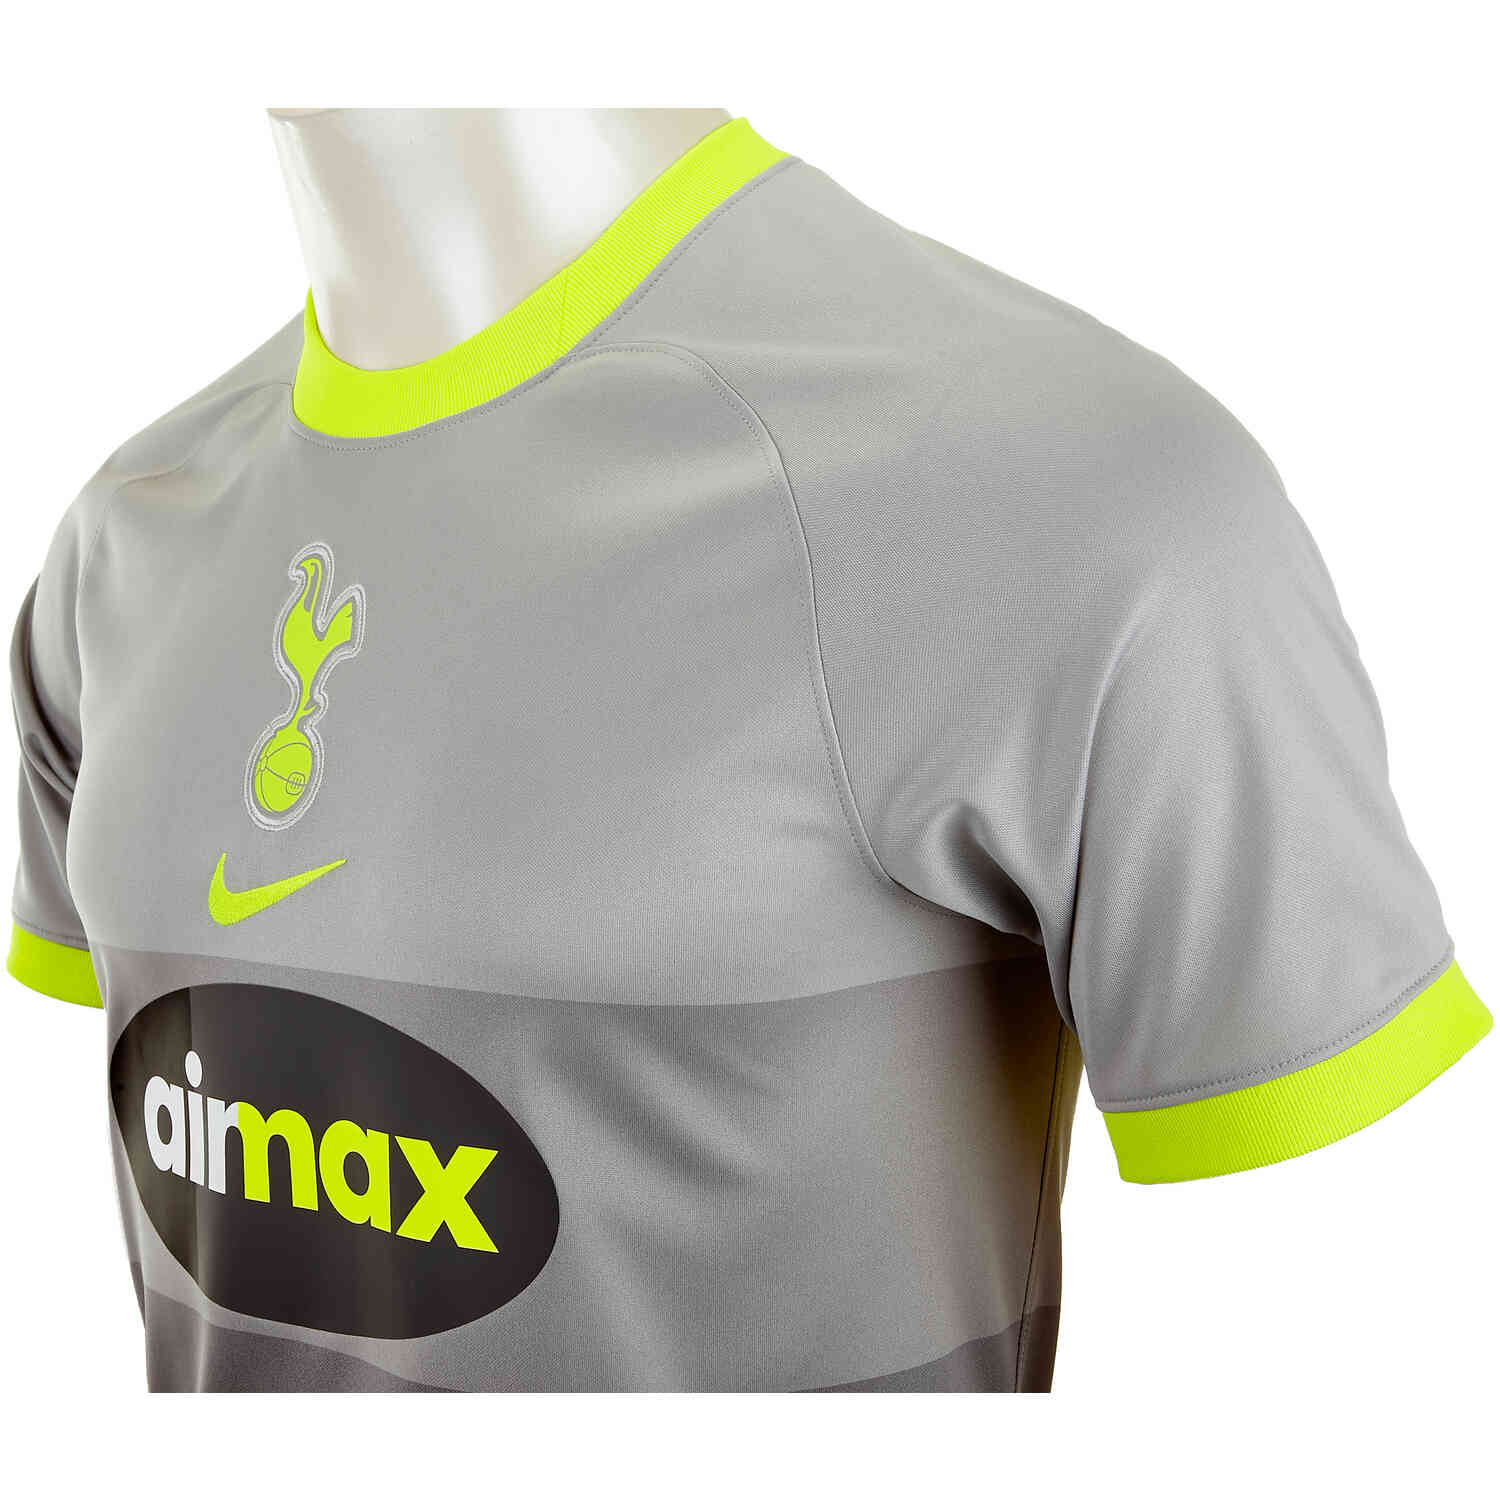 2020/21 Tottenham Hotspur Shirt Jersey Match Player Spec Issue Nike Away  Small